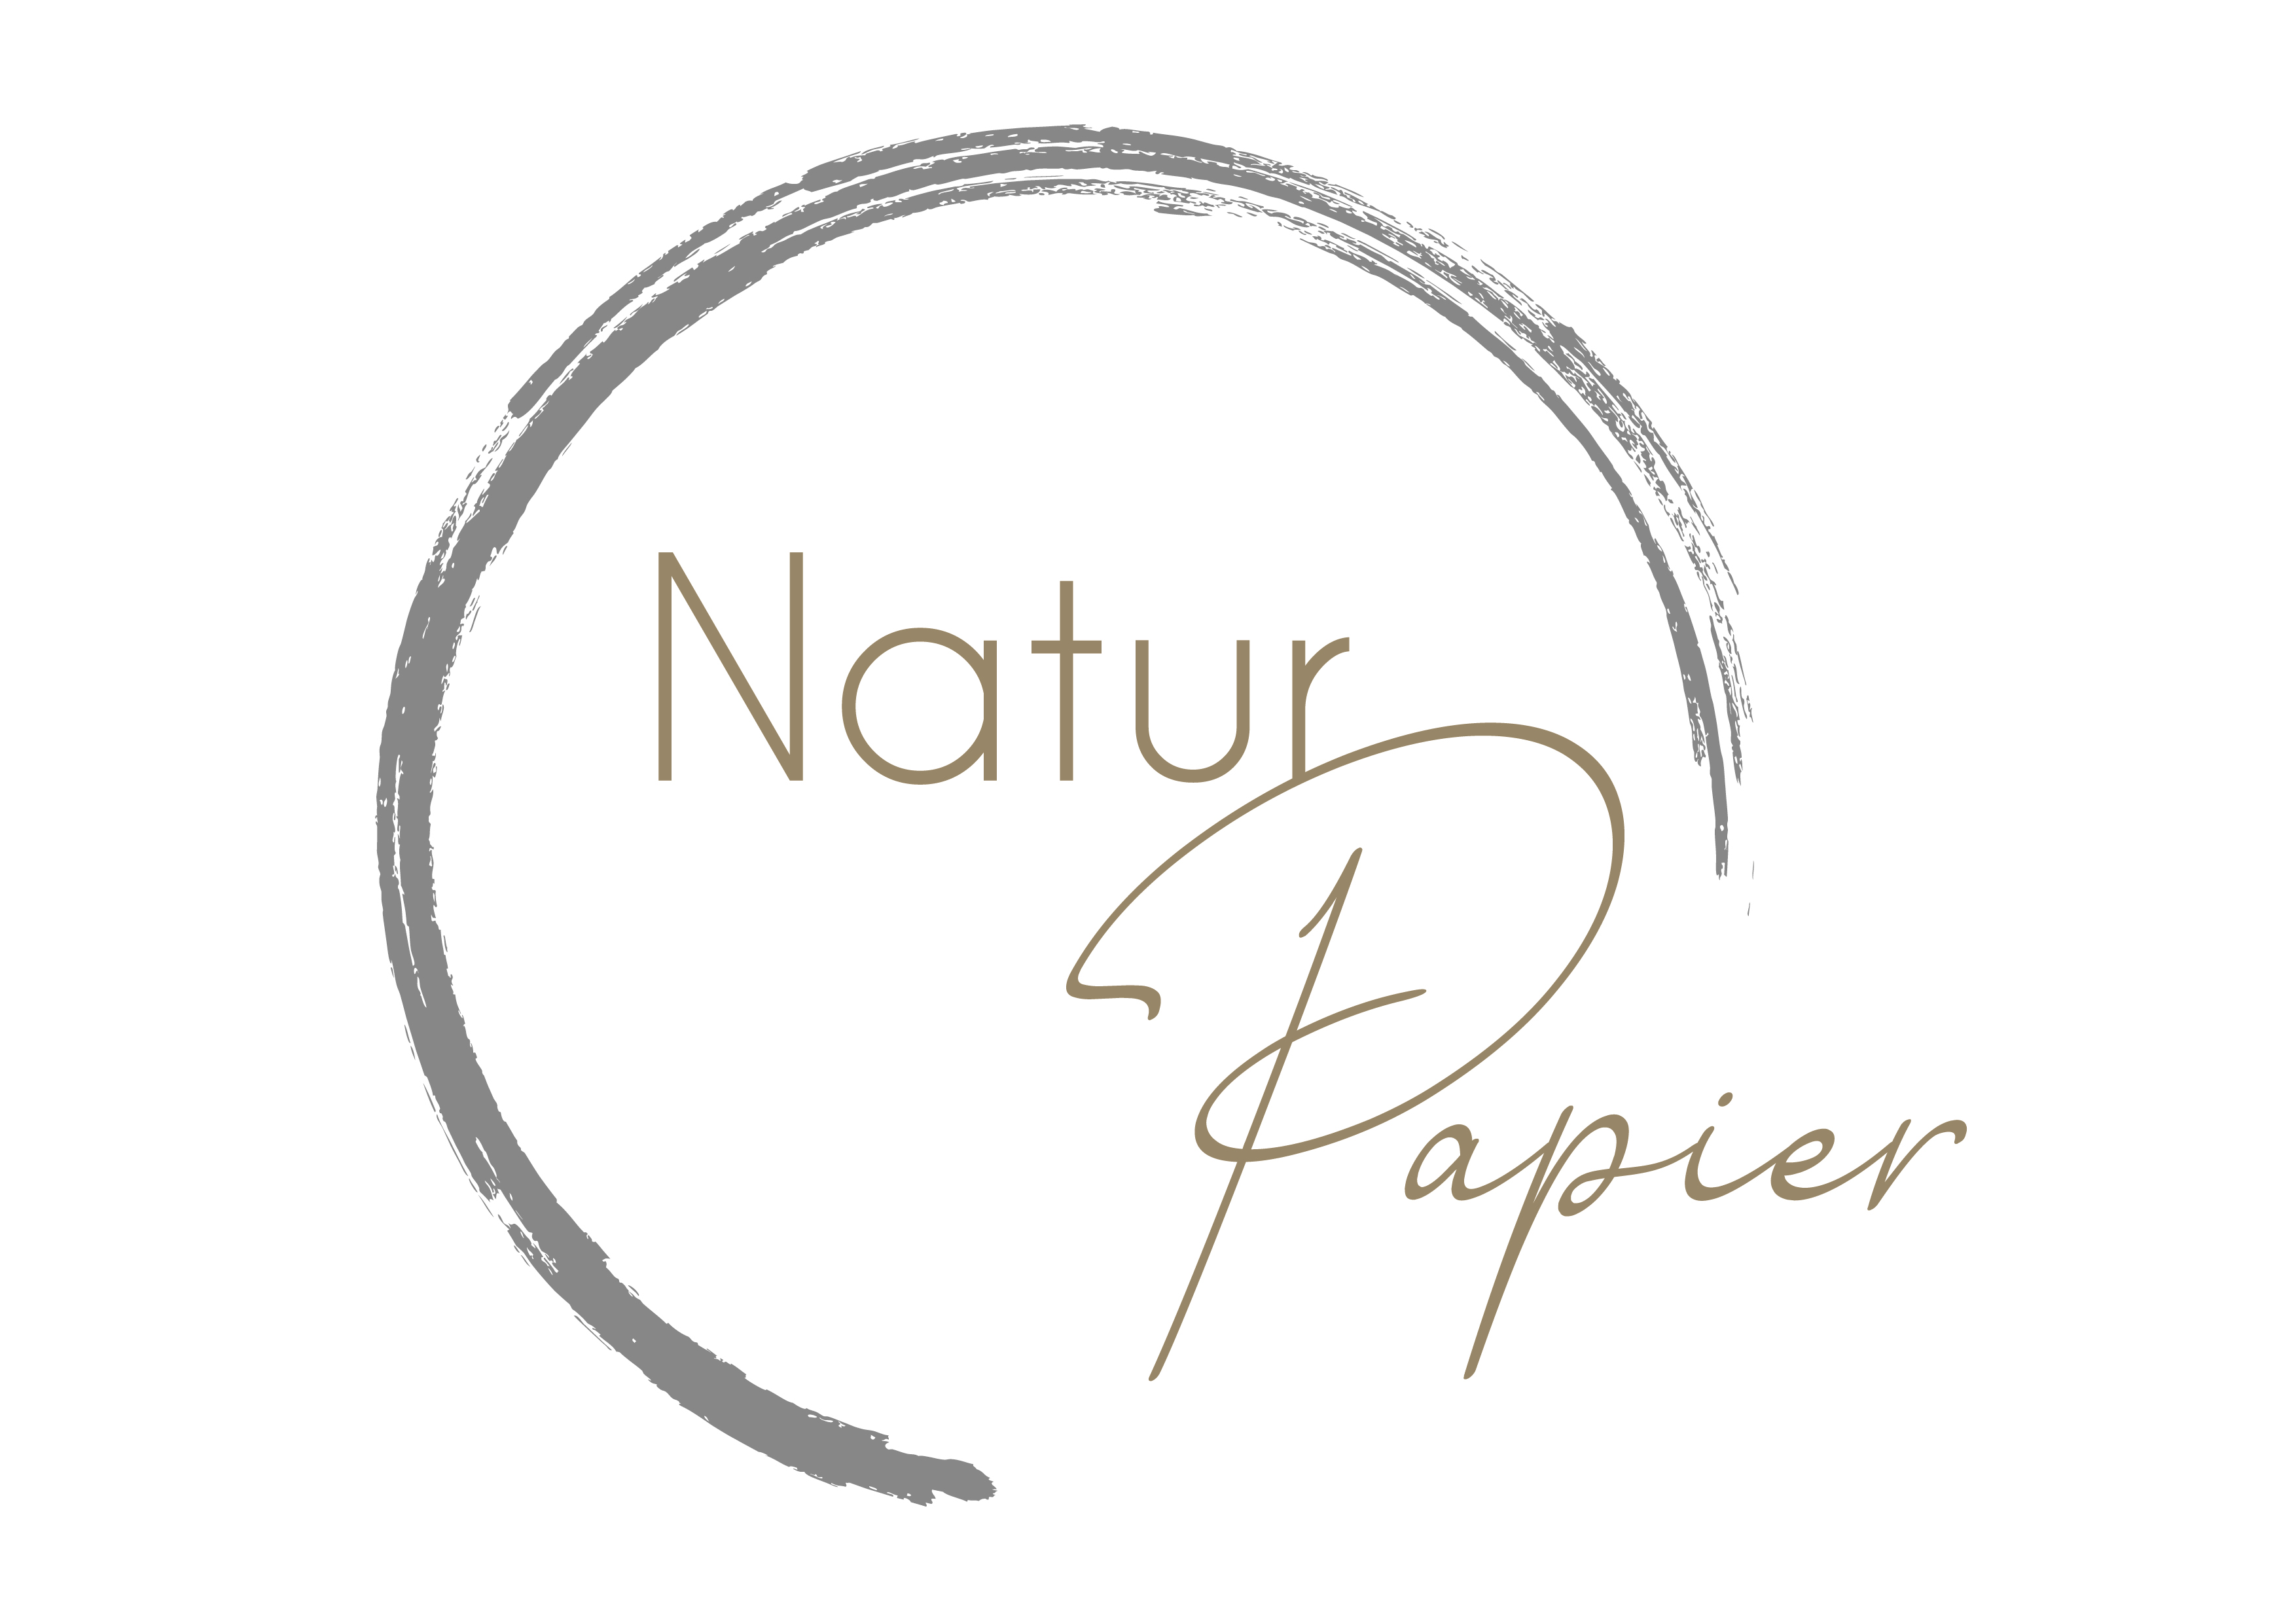 Naturpapier Lampersberger